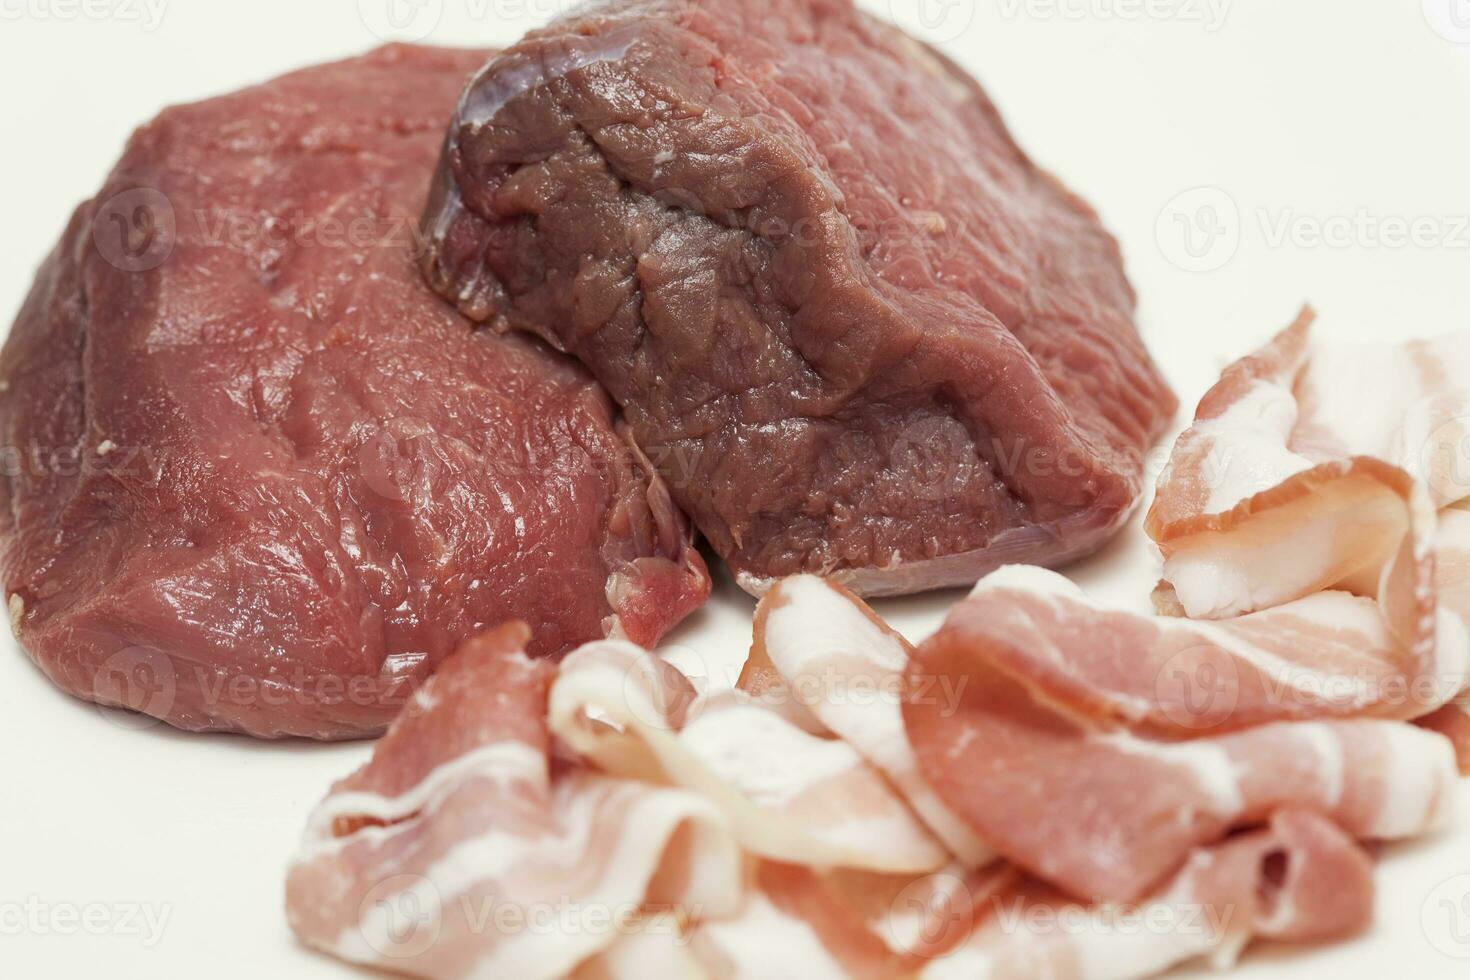 rauw medaillons van rundvlees lende en varkensvlees spek. filet mignon voorbereiding. foto